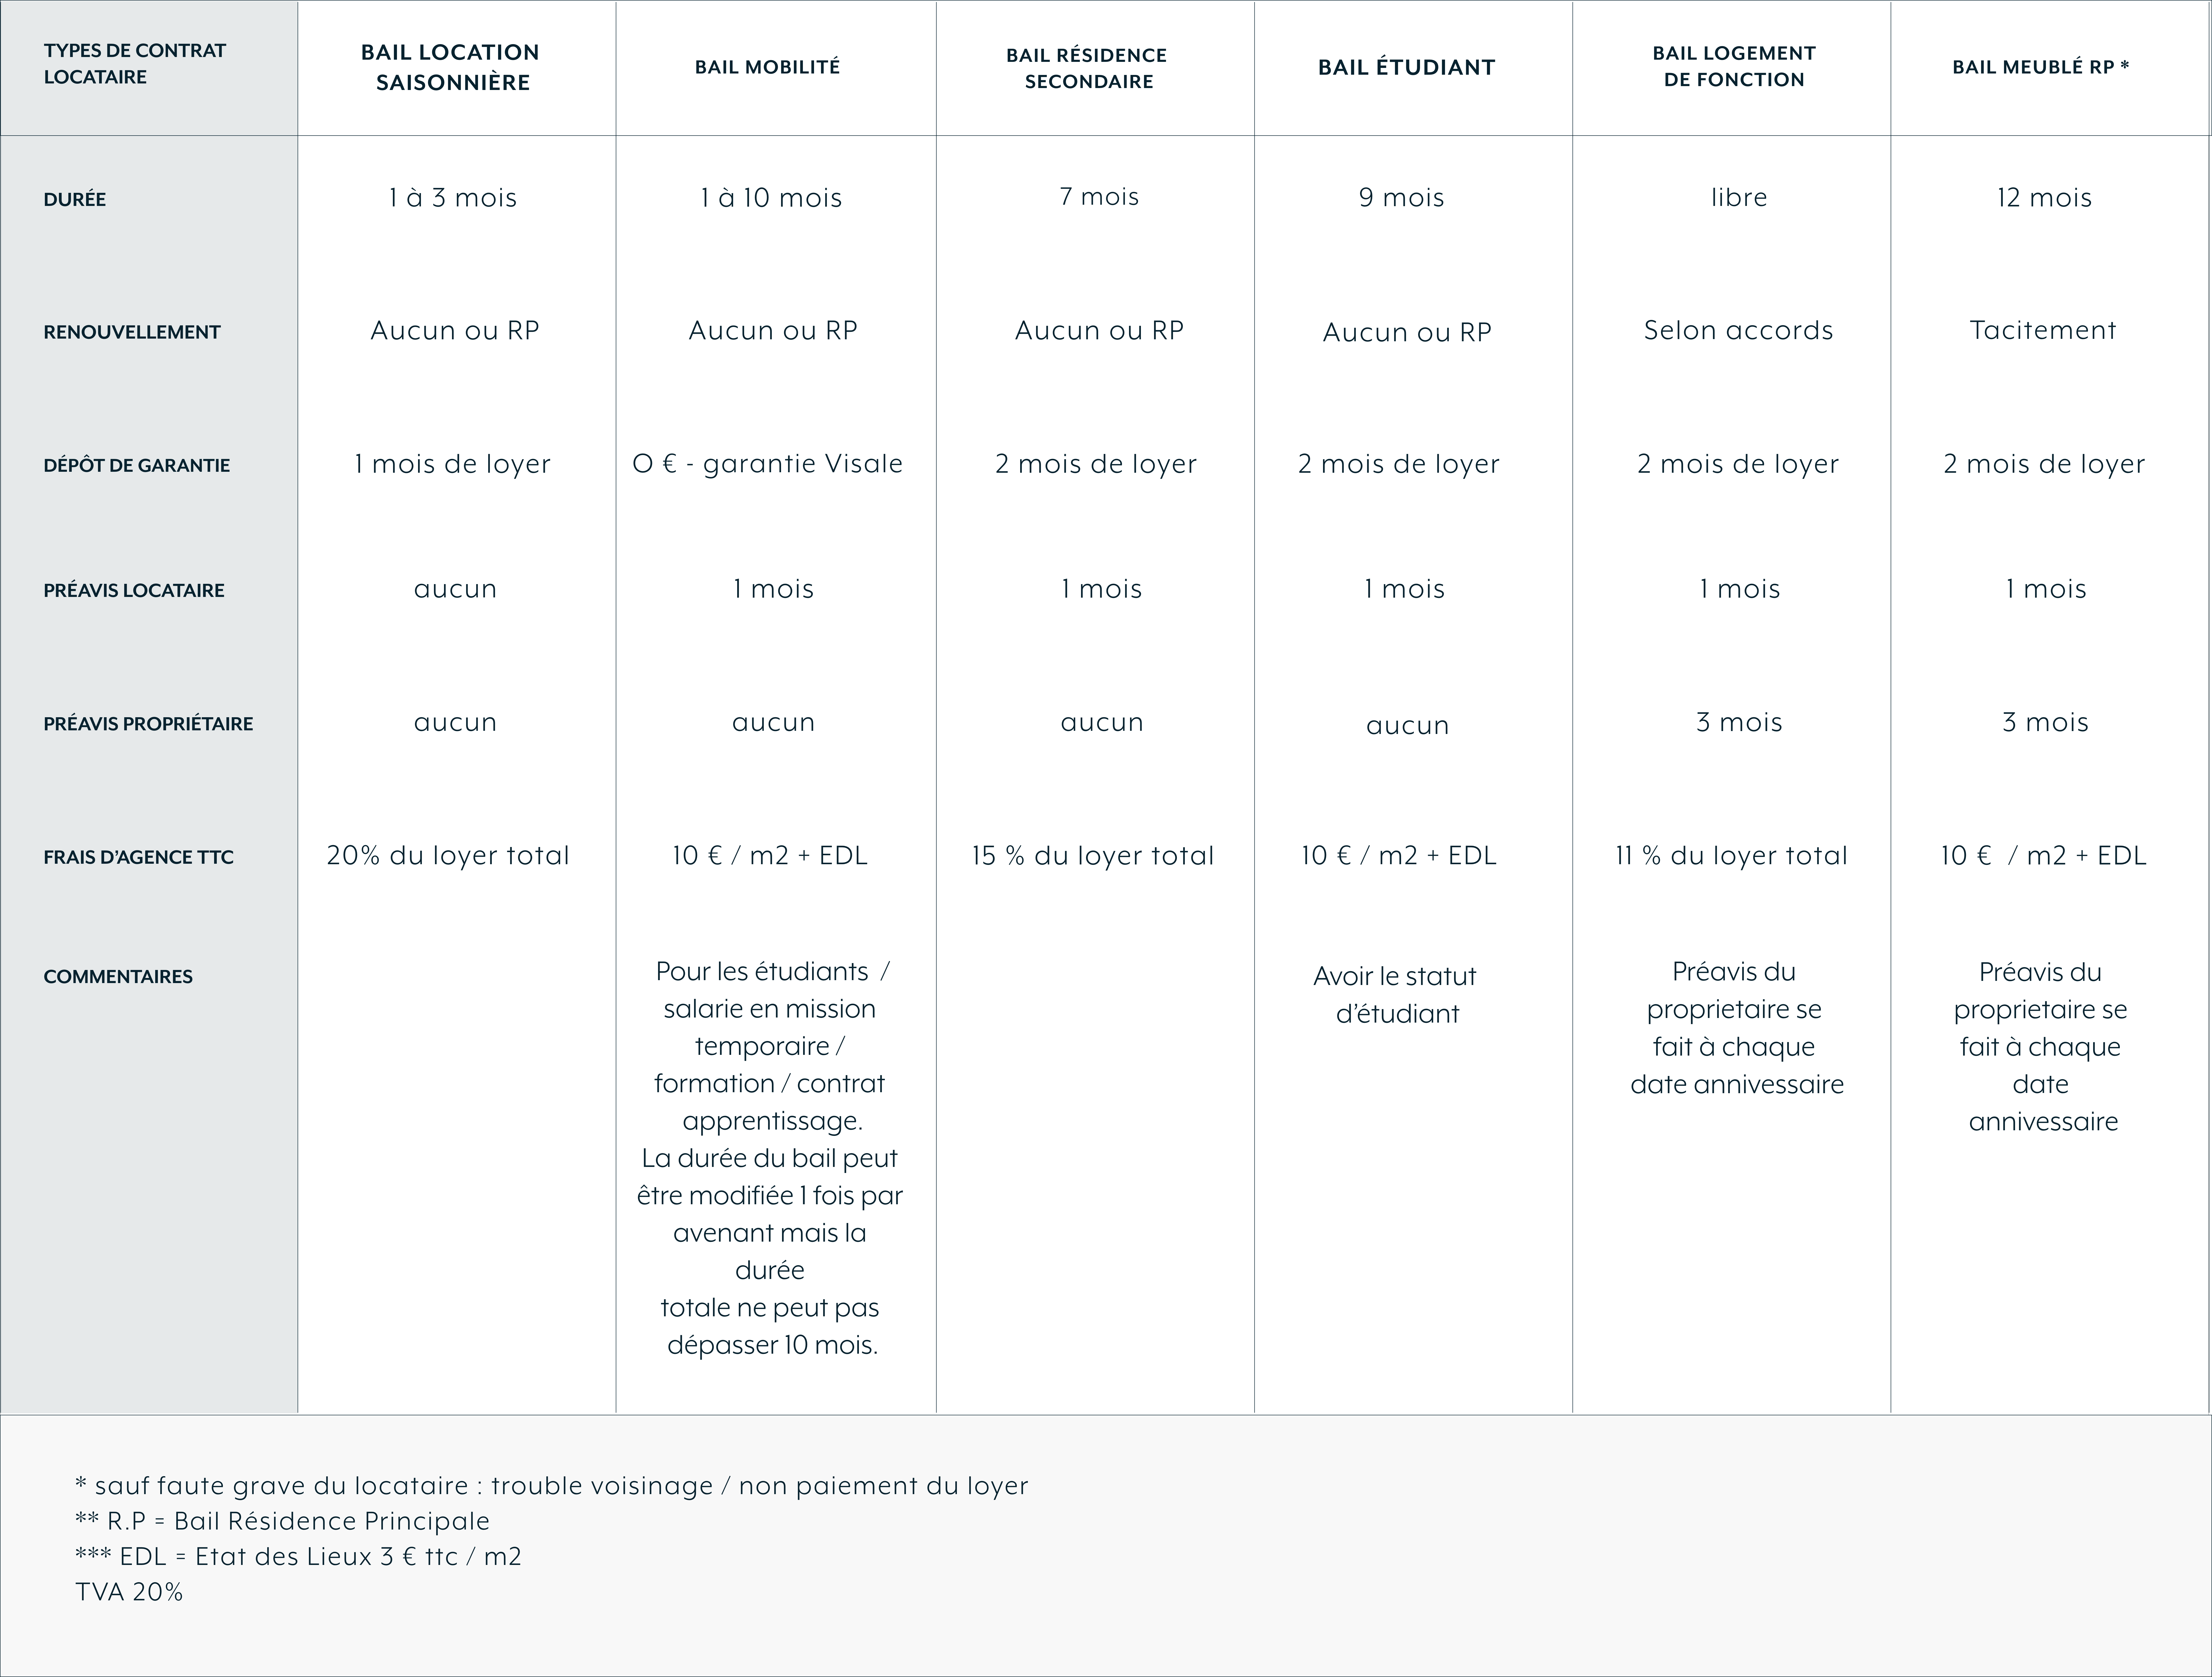 Voici le tableau comparatif des différents types de contrat locataire pour les biens meublés loués par l'agence The Other Flat à Marseille.